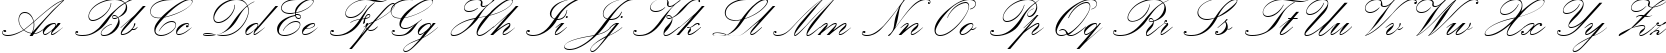 Пример написания английского алфавита шрифтом Palace Script MT